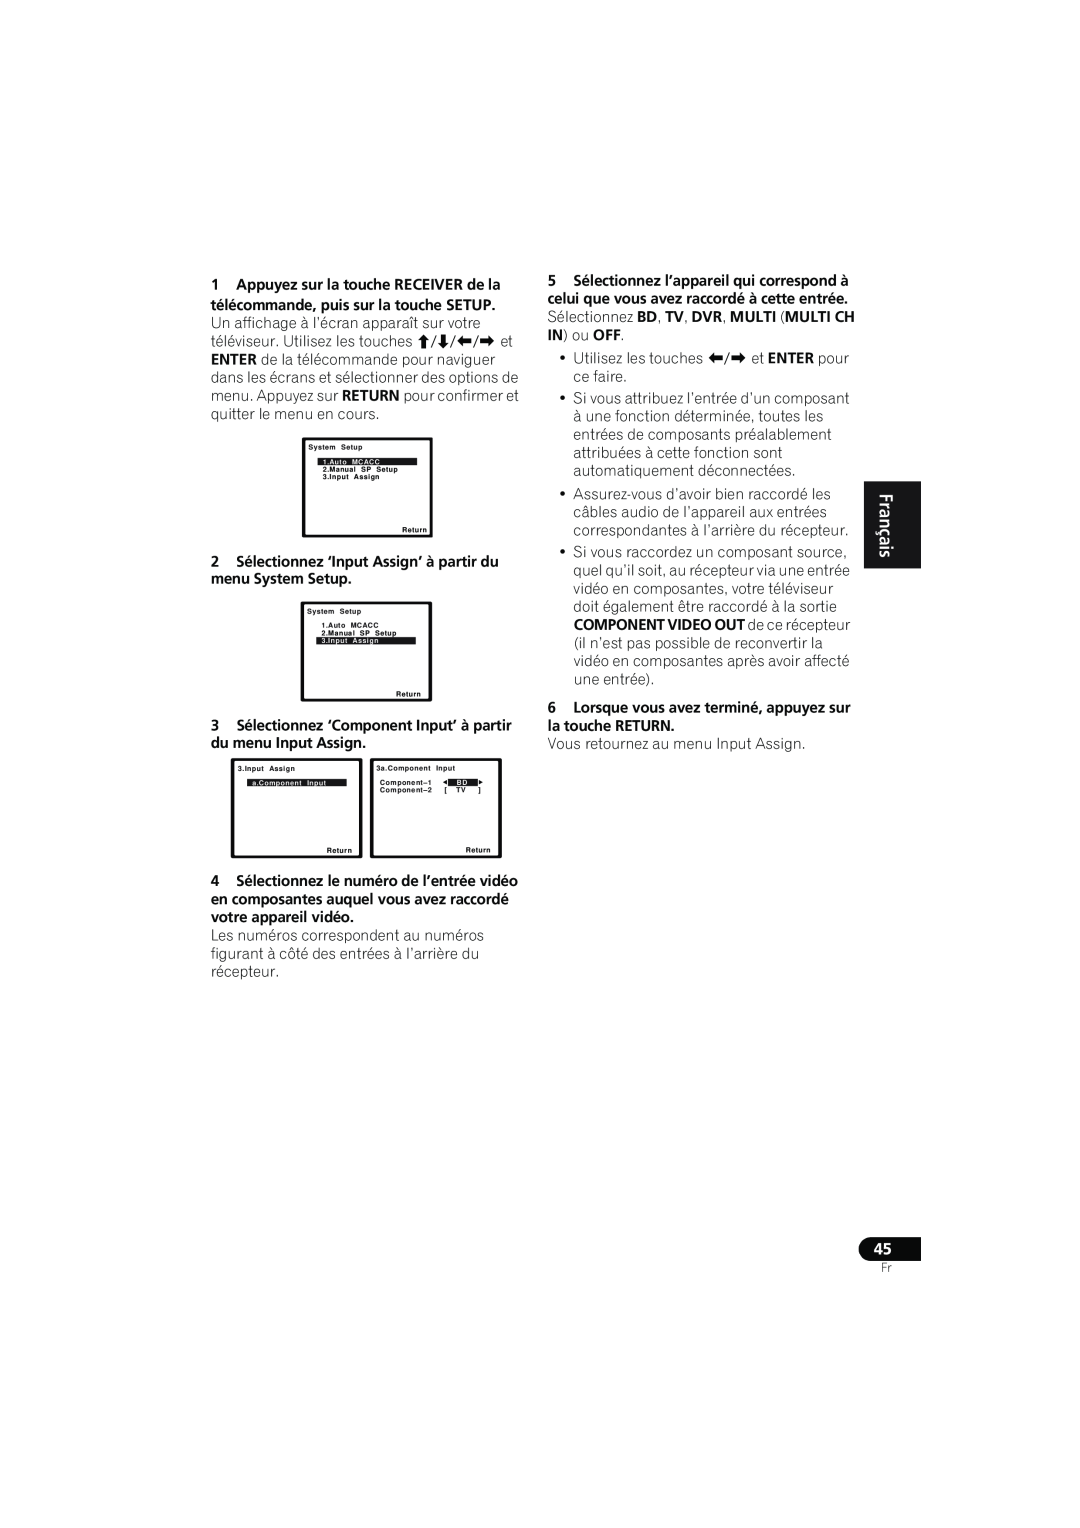 Pioneer VSX-819H-K manual English Français Español, •Utilisez les touches / et ENTER pour ce faire 